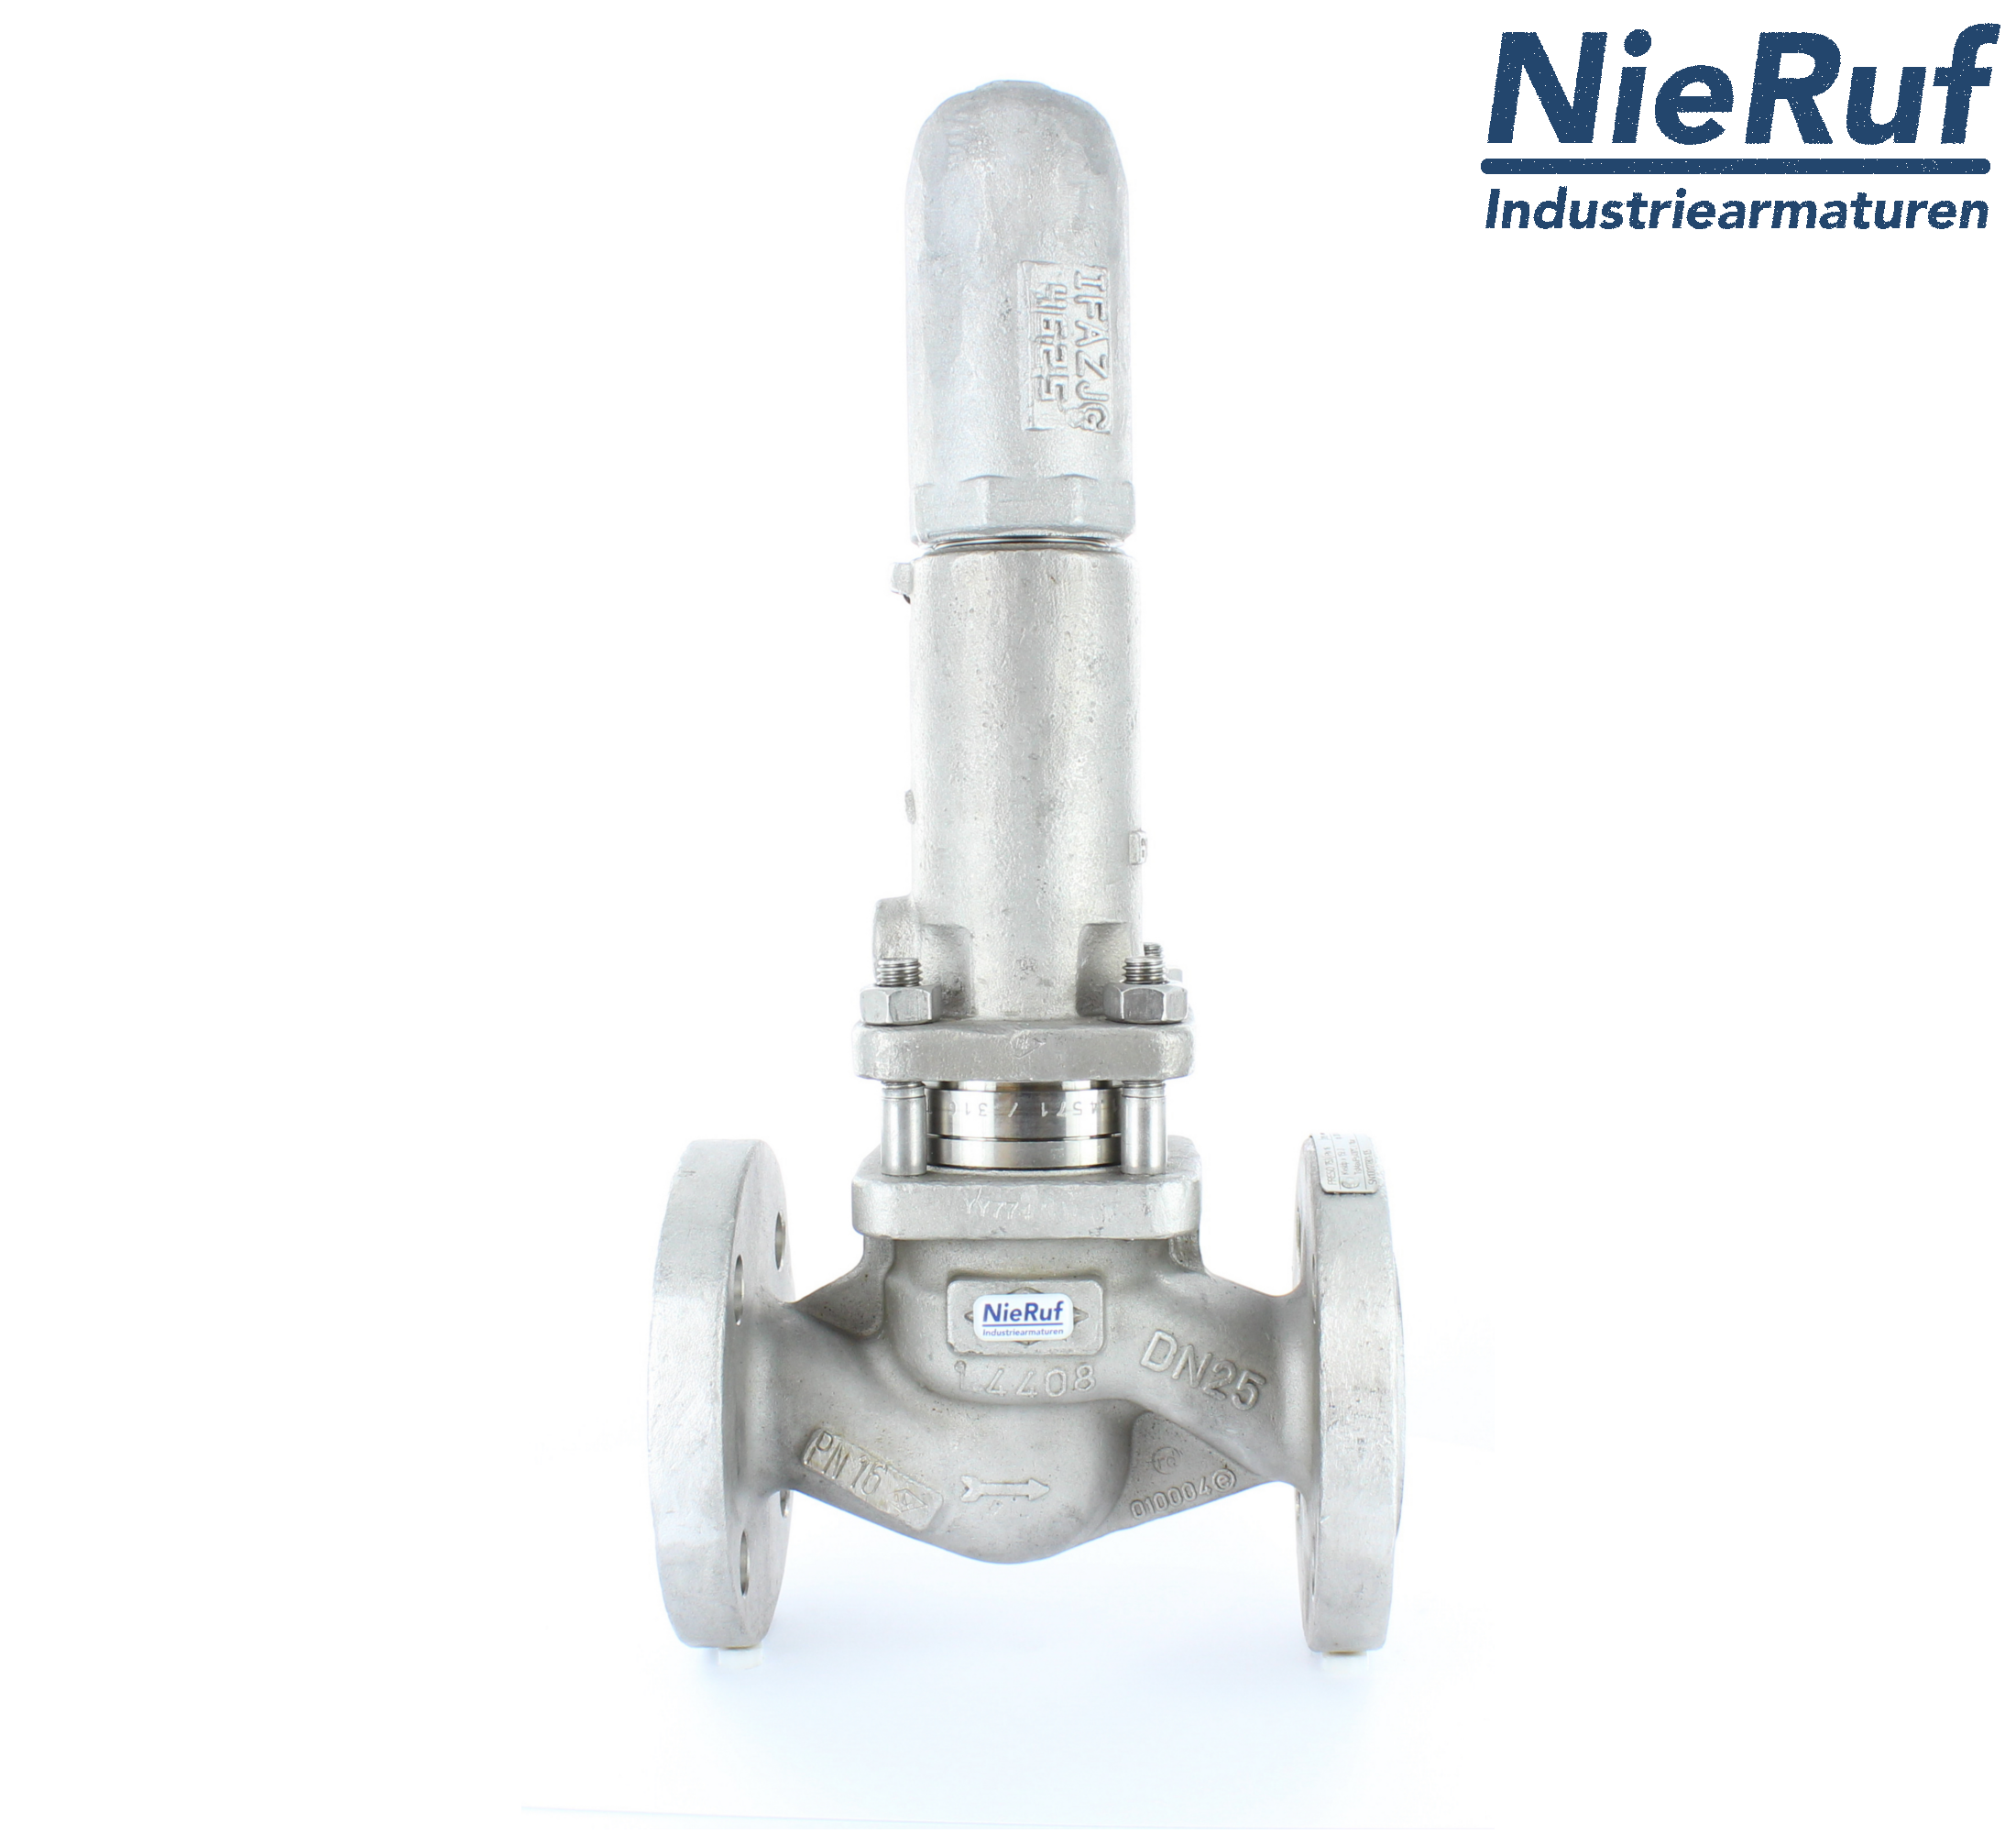 piston overflow valve DN 32 UV13 cast iron 1.0619+N 2,0 - 5,0 bar